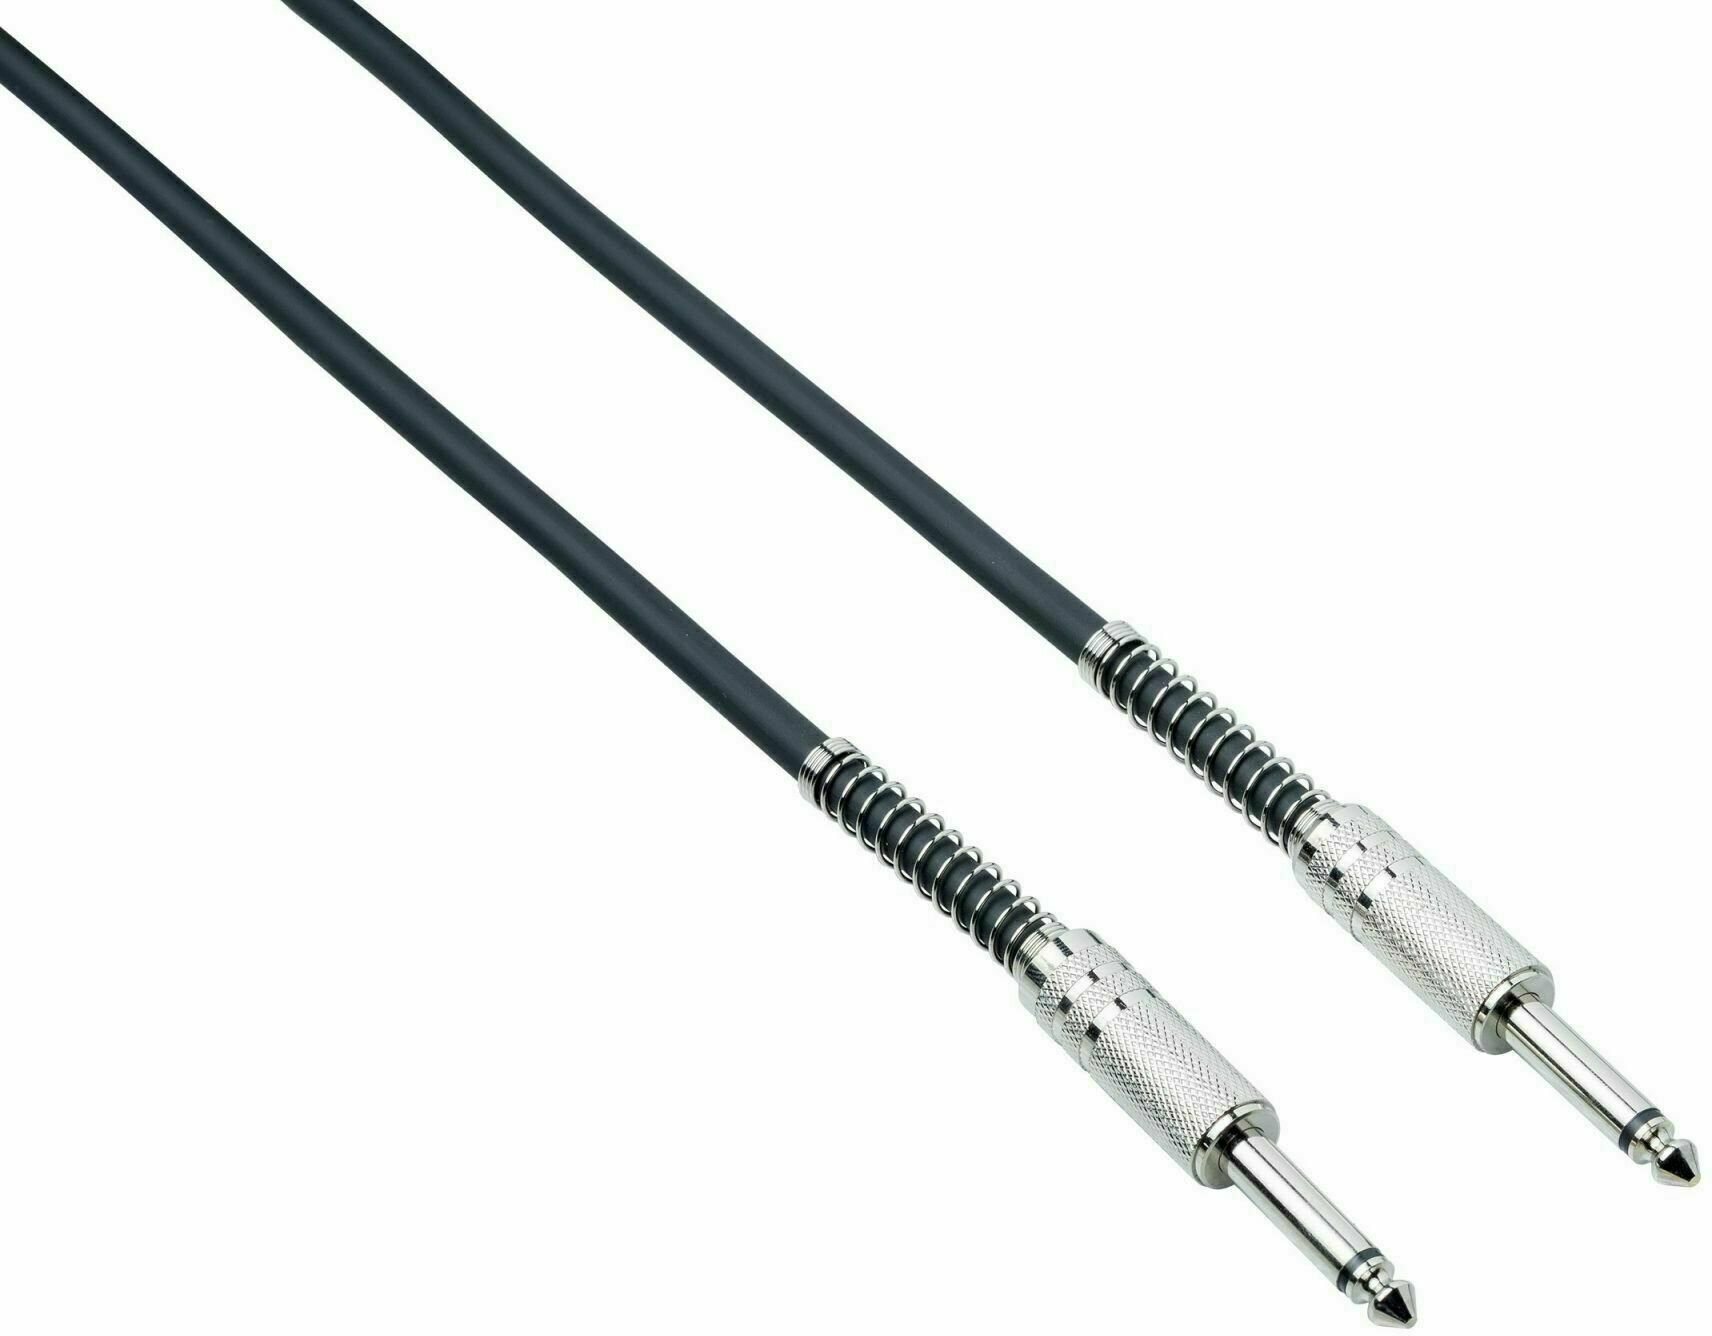 Povezovalni kabel, patch kabel Bespeco IRO 100 Črna 100 cm Ravni - Ravni